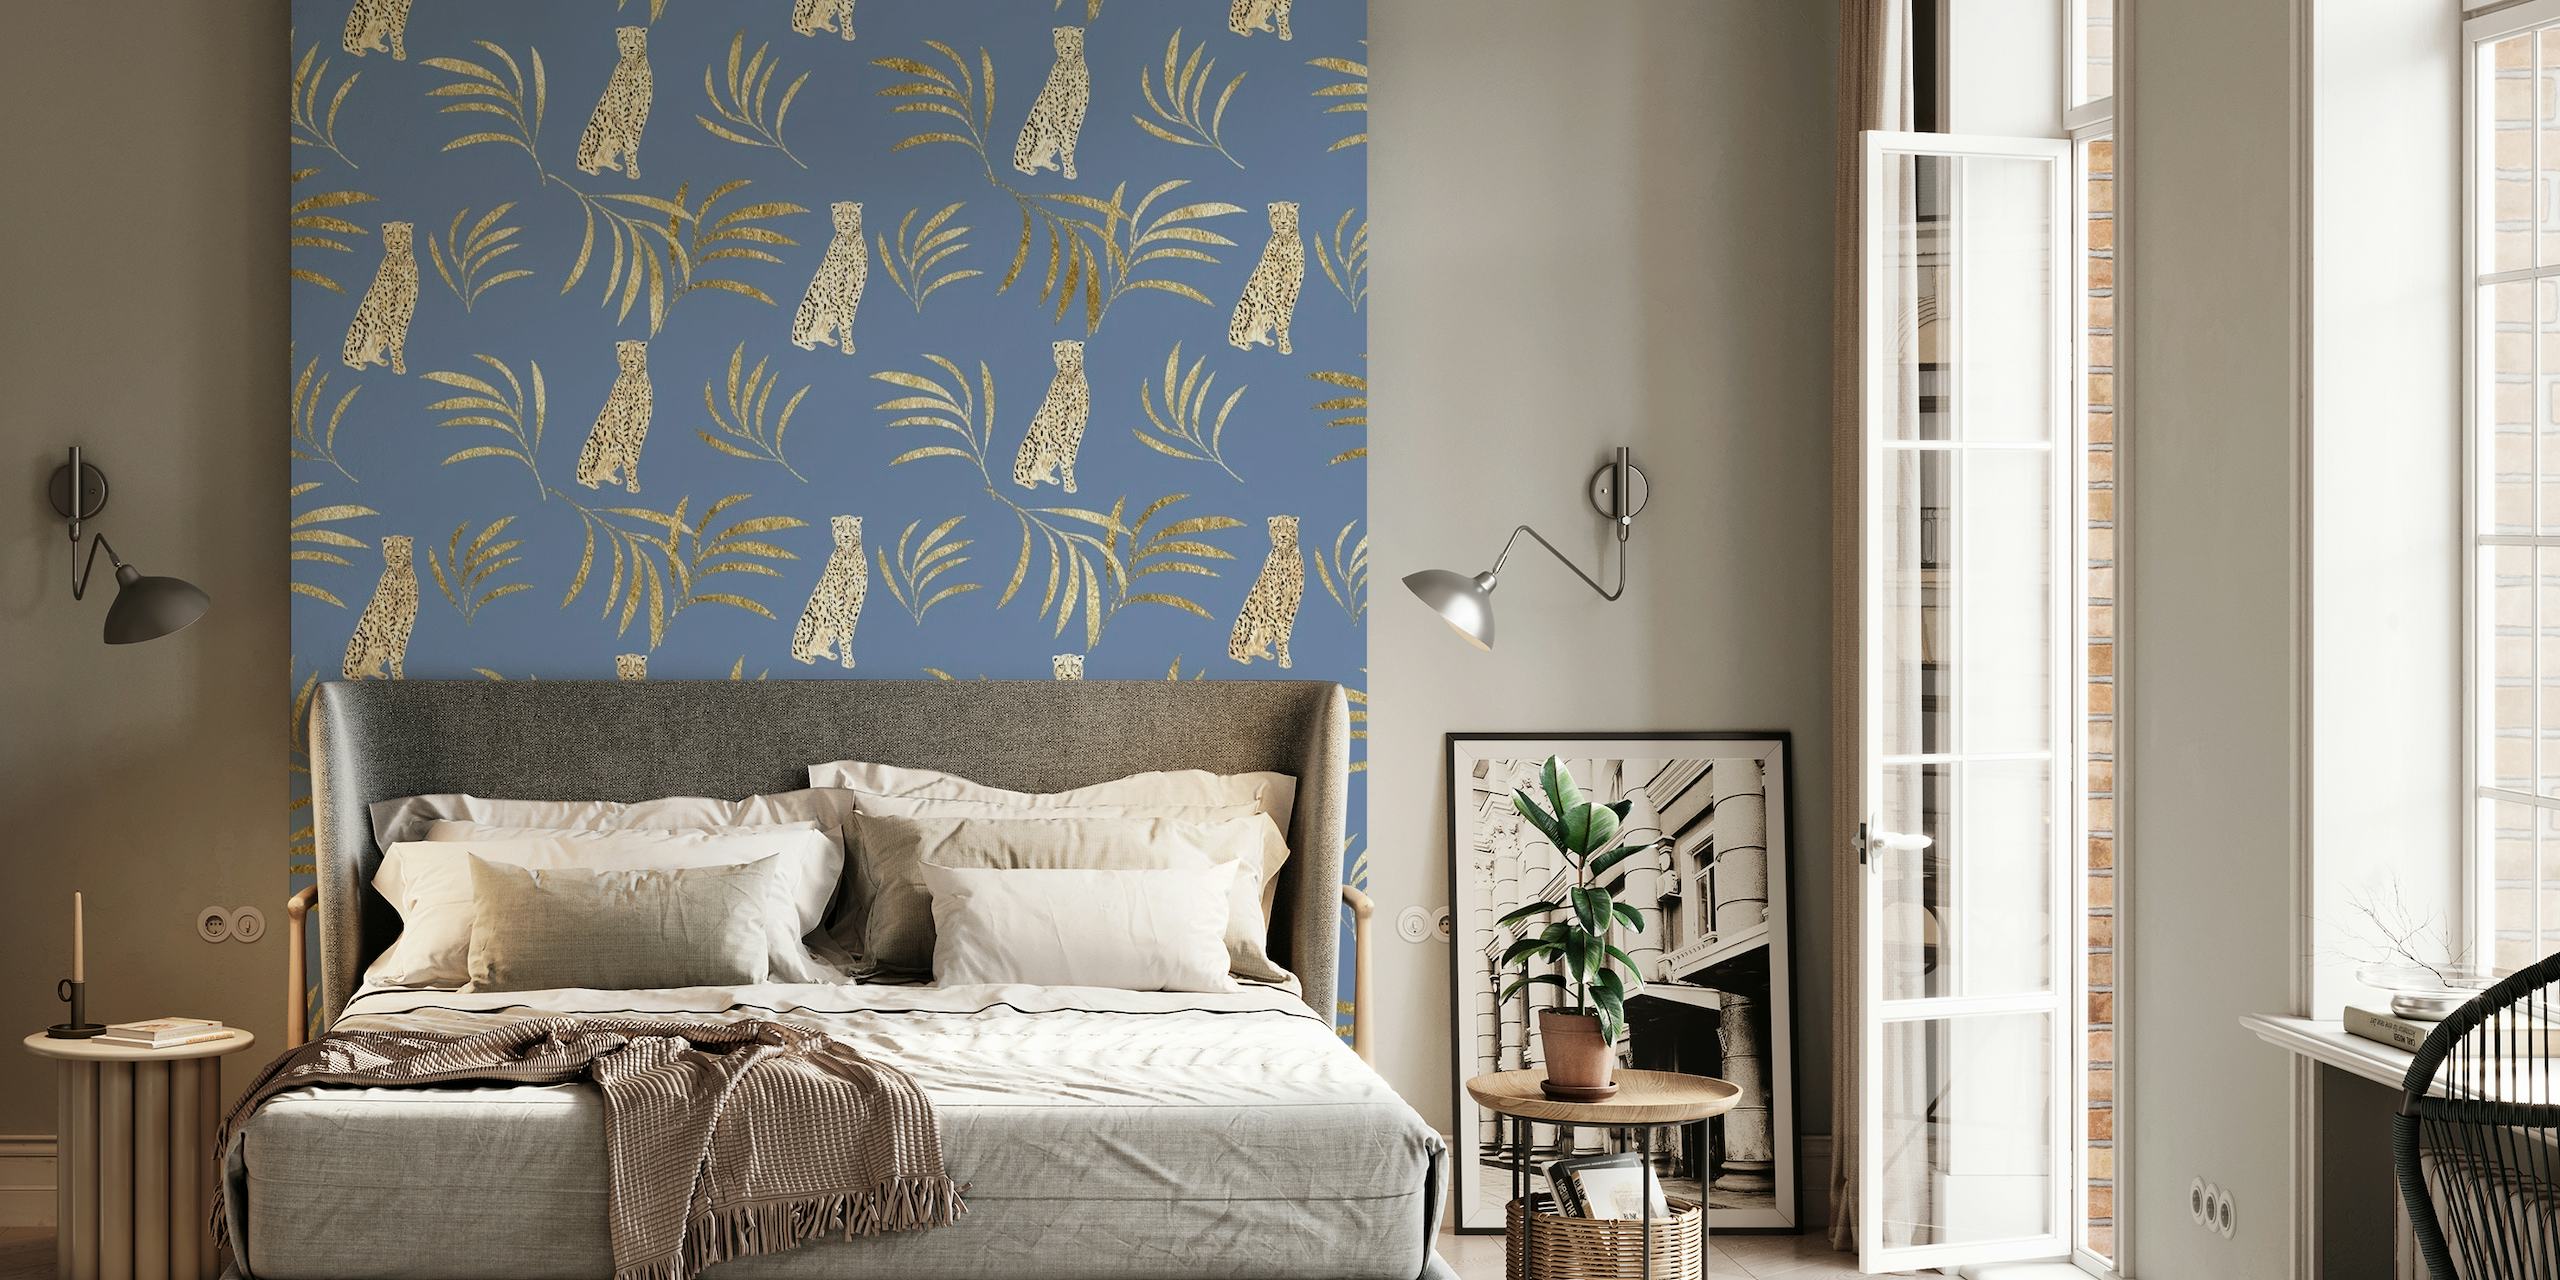 Wandbild mit Geparden- und Eukalyptusblättern in Gold- und Grüntönen auf tiefblauem Hintergrund